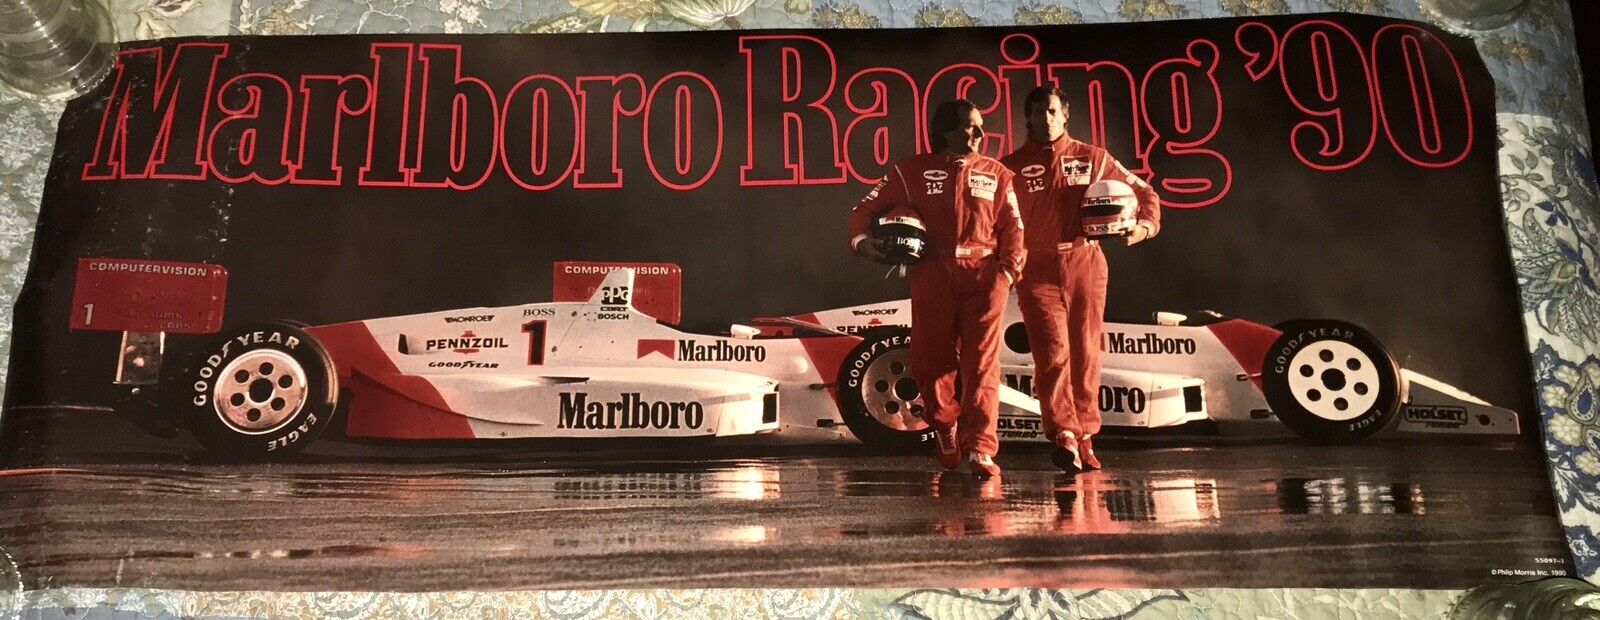 1990 Marlboro Team Penske Racing, Emerson Fittipaldi, Danny Sullivan Poster Nice